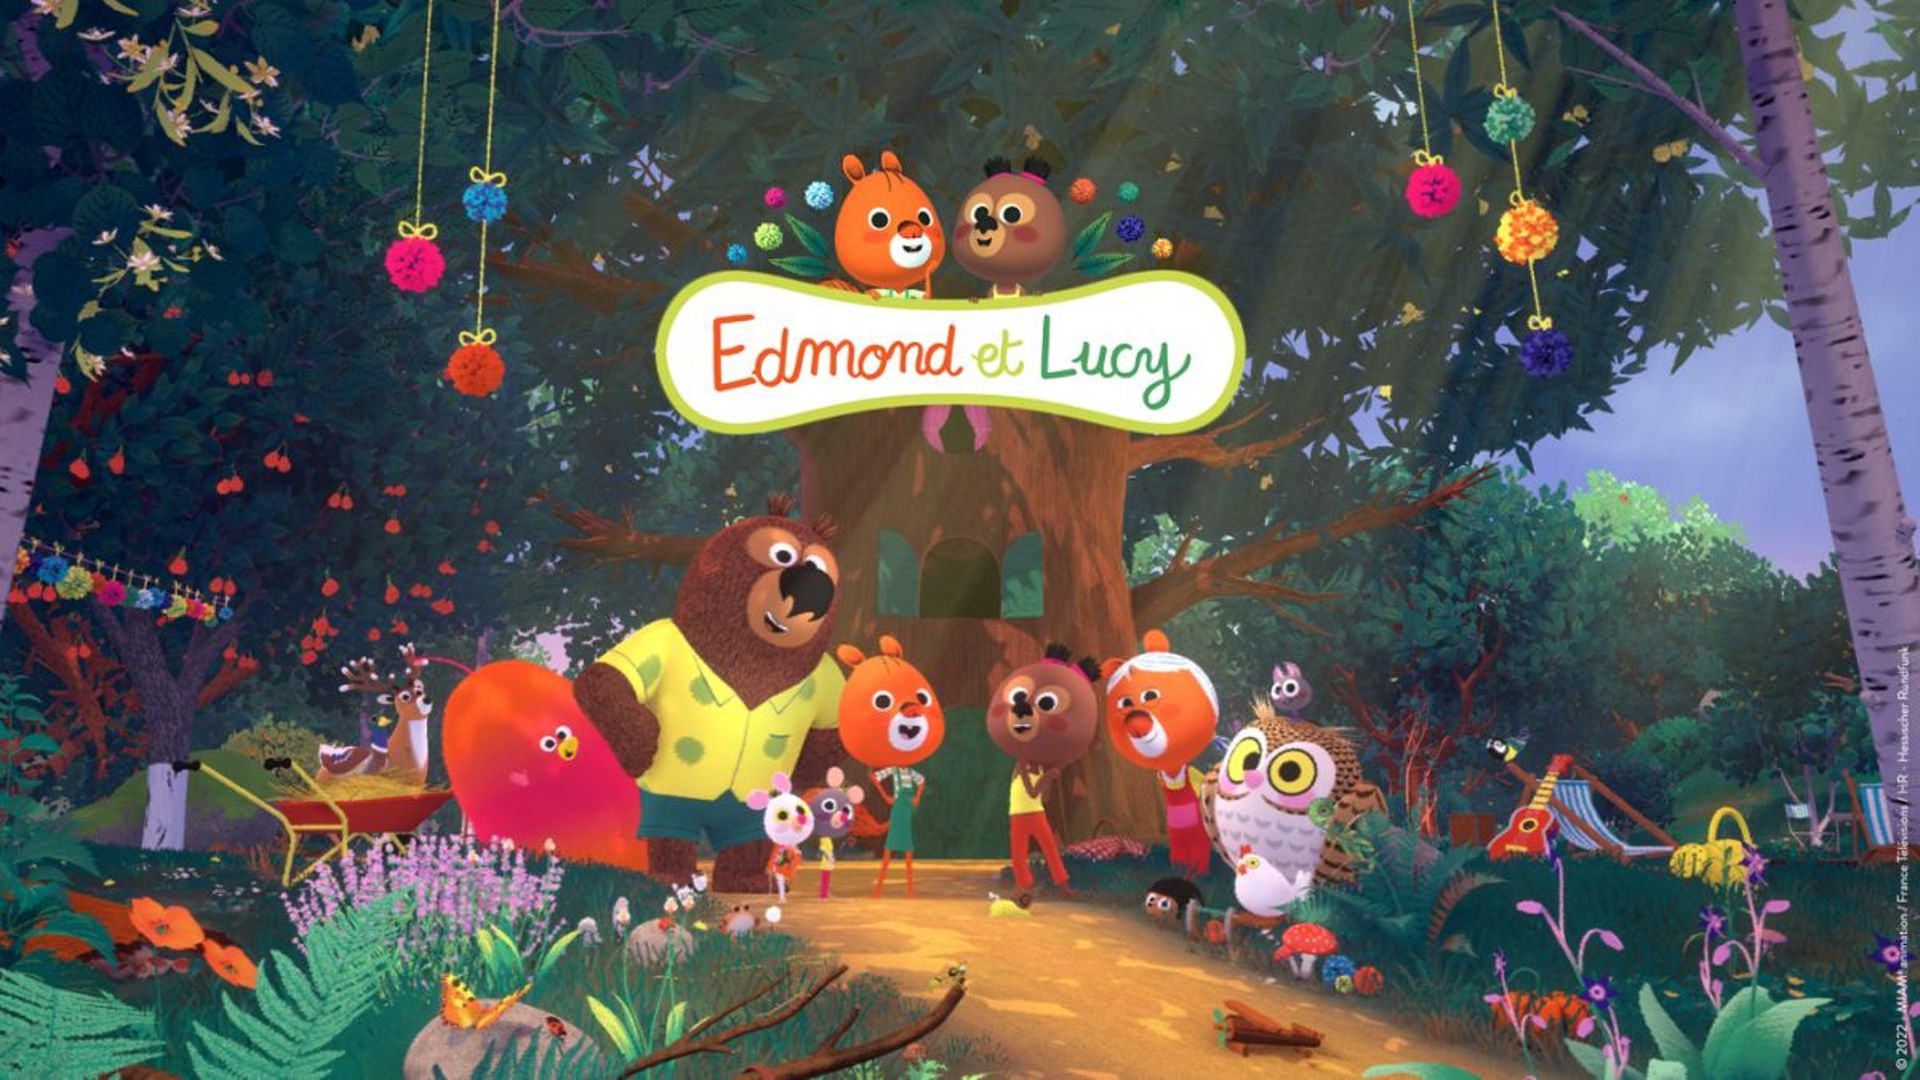 "Edmond et Lucy" atterrira sur la plateforme du service public Okoo le 8 juillet, avant une diffusion sur France 5 à la rentrée.